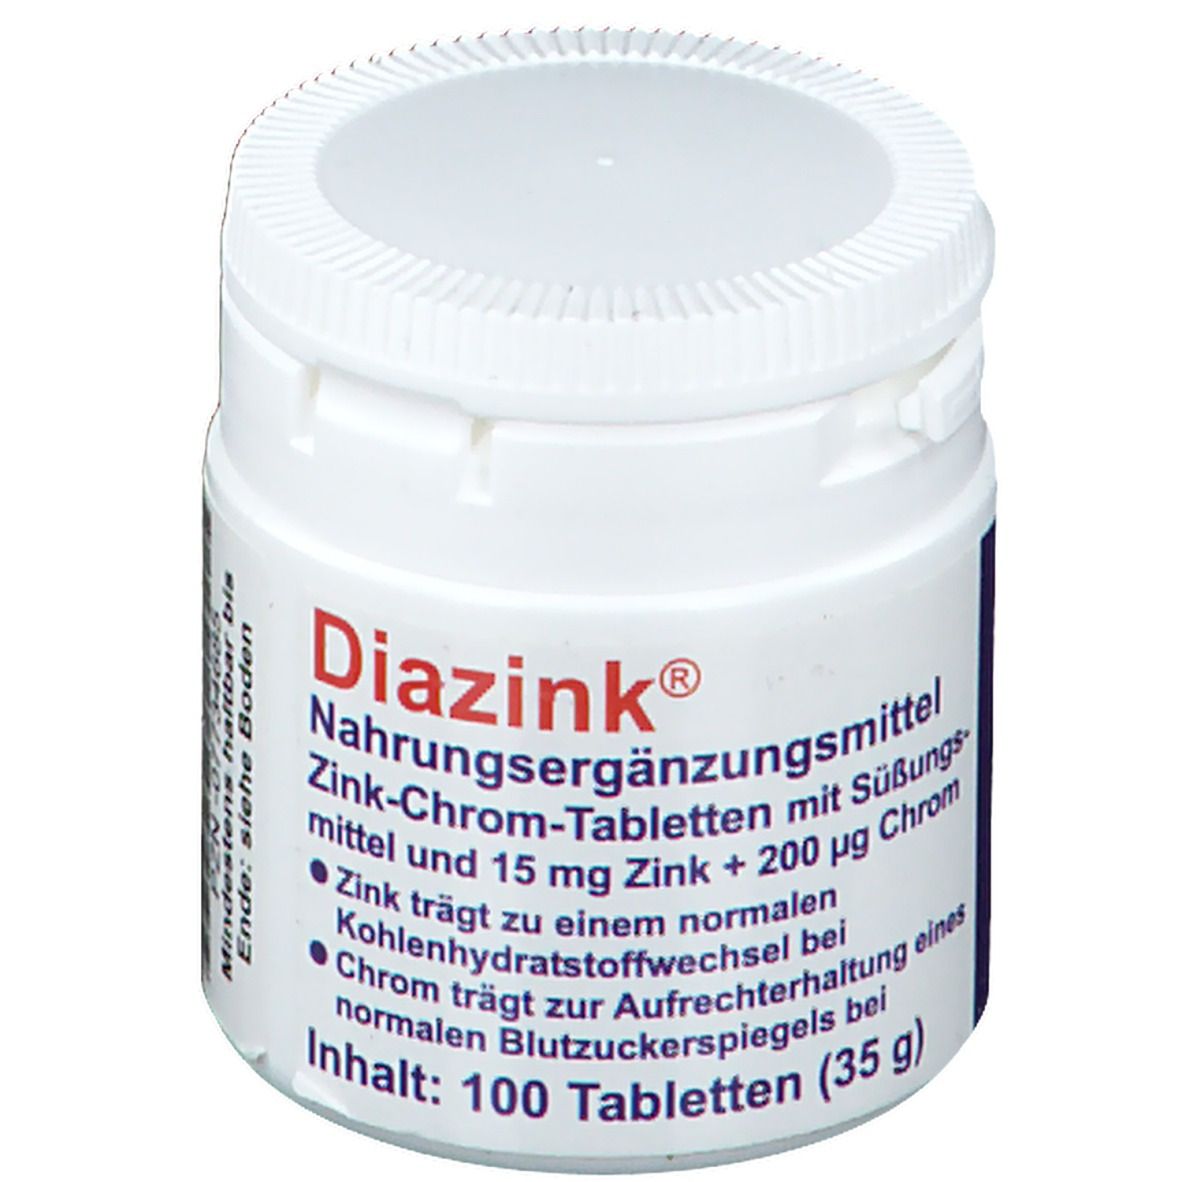 Diazink®